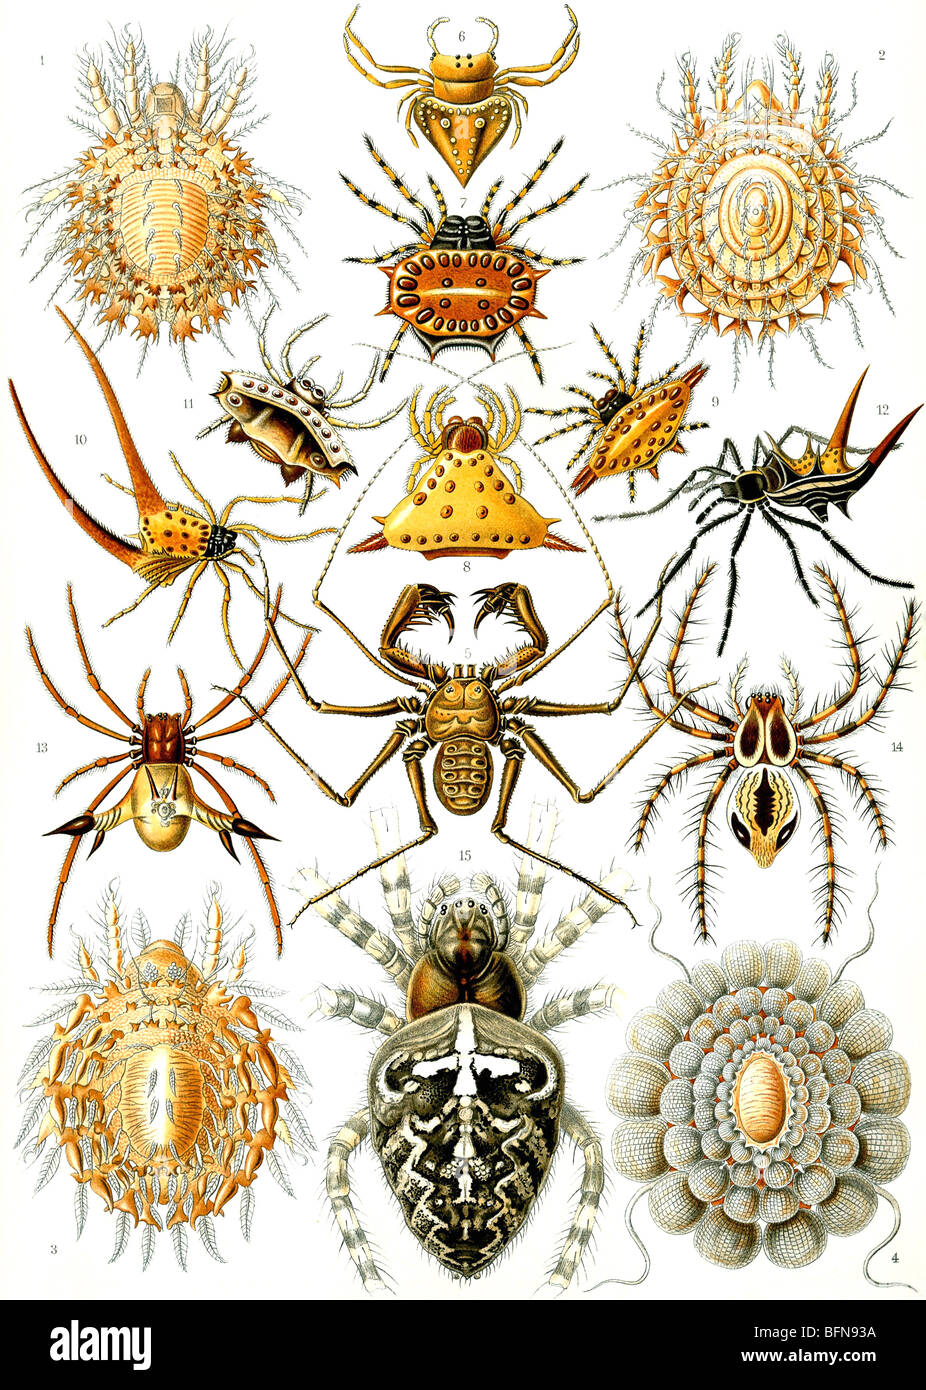 Die 66. Platte von Haeckels Kunstformen der Natur (1904), zeigen Organismen als Arachniden oder Spinnen Stockfoto